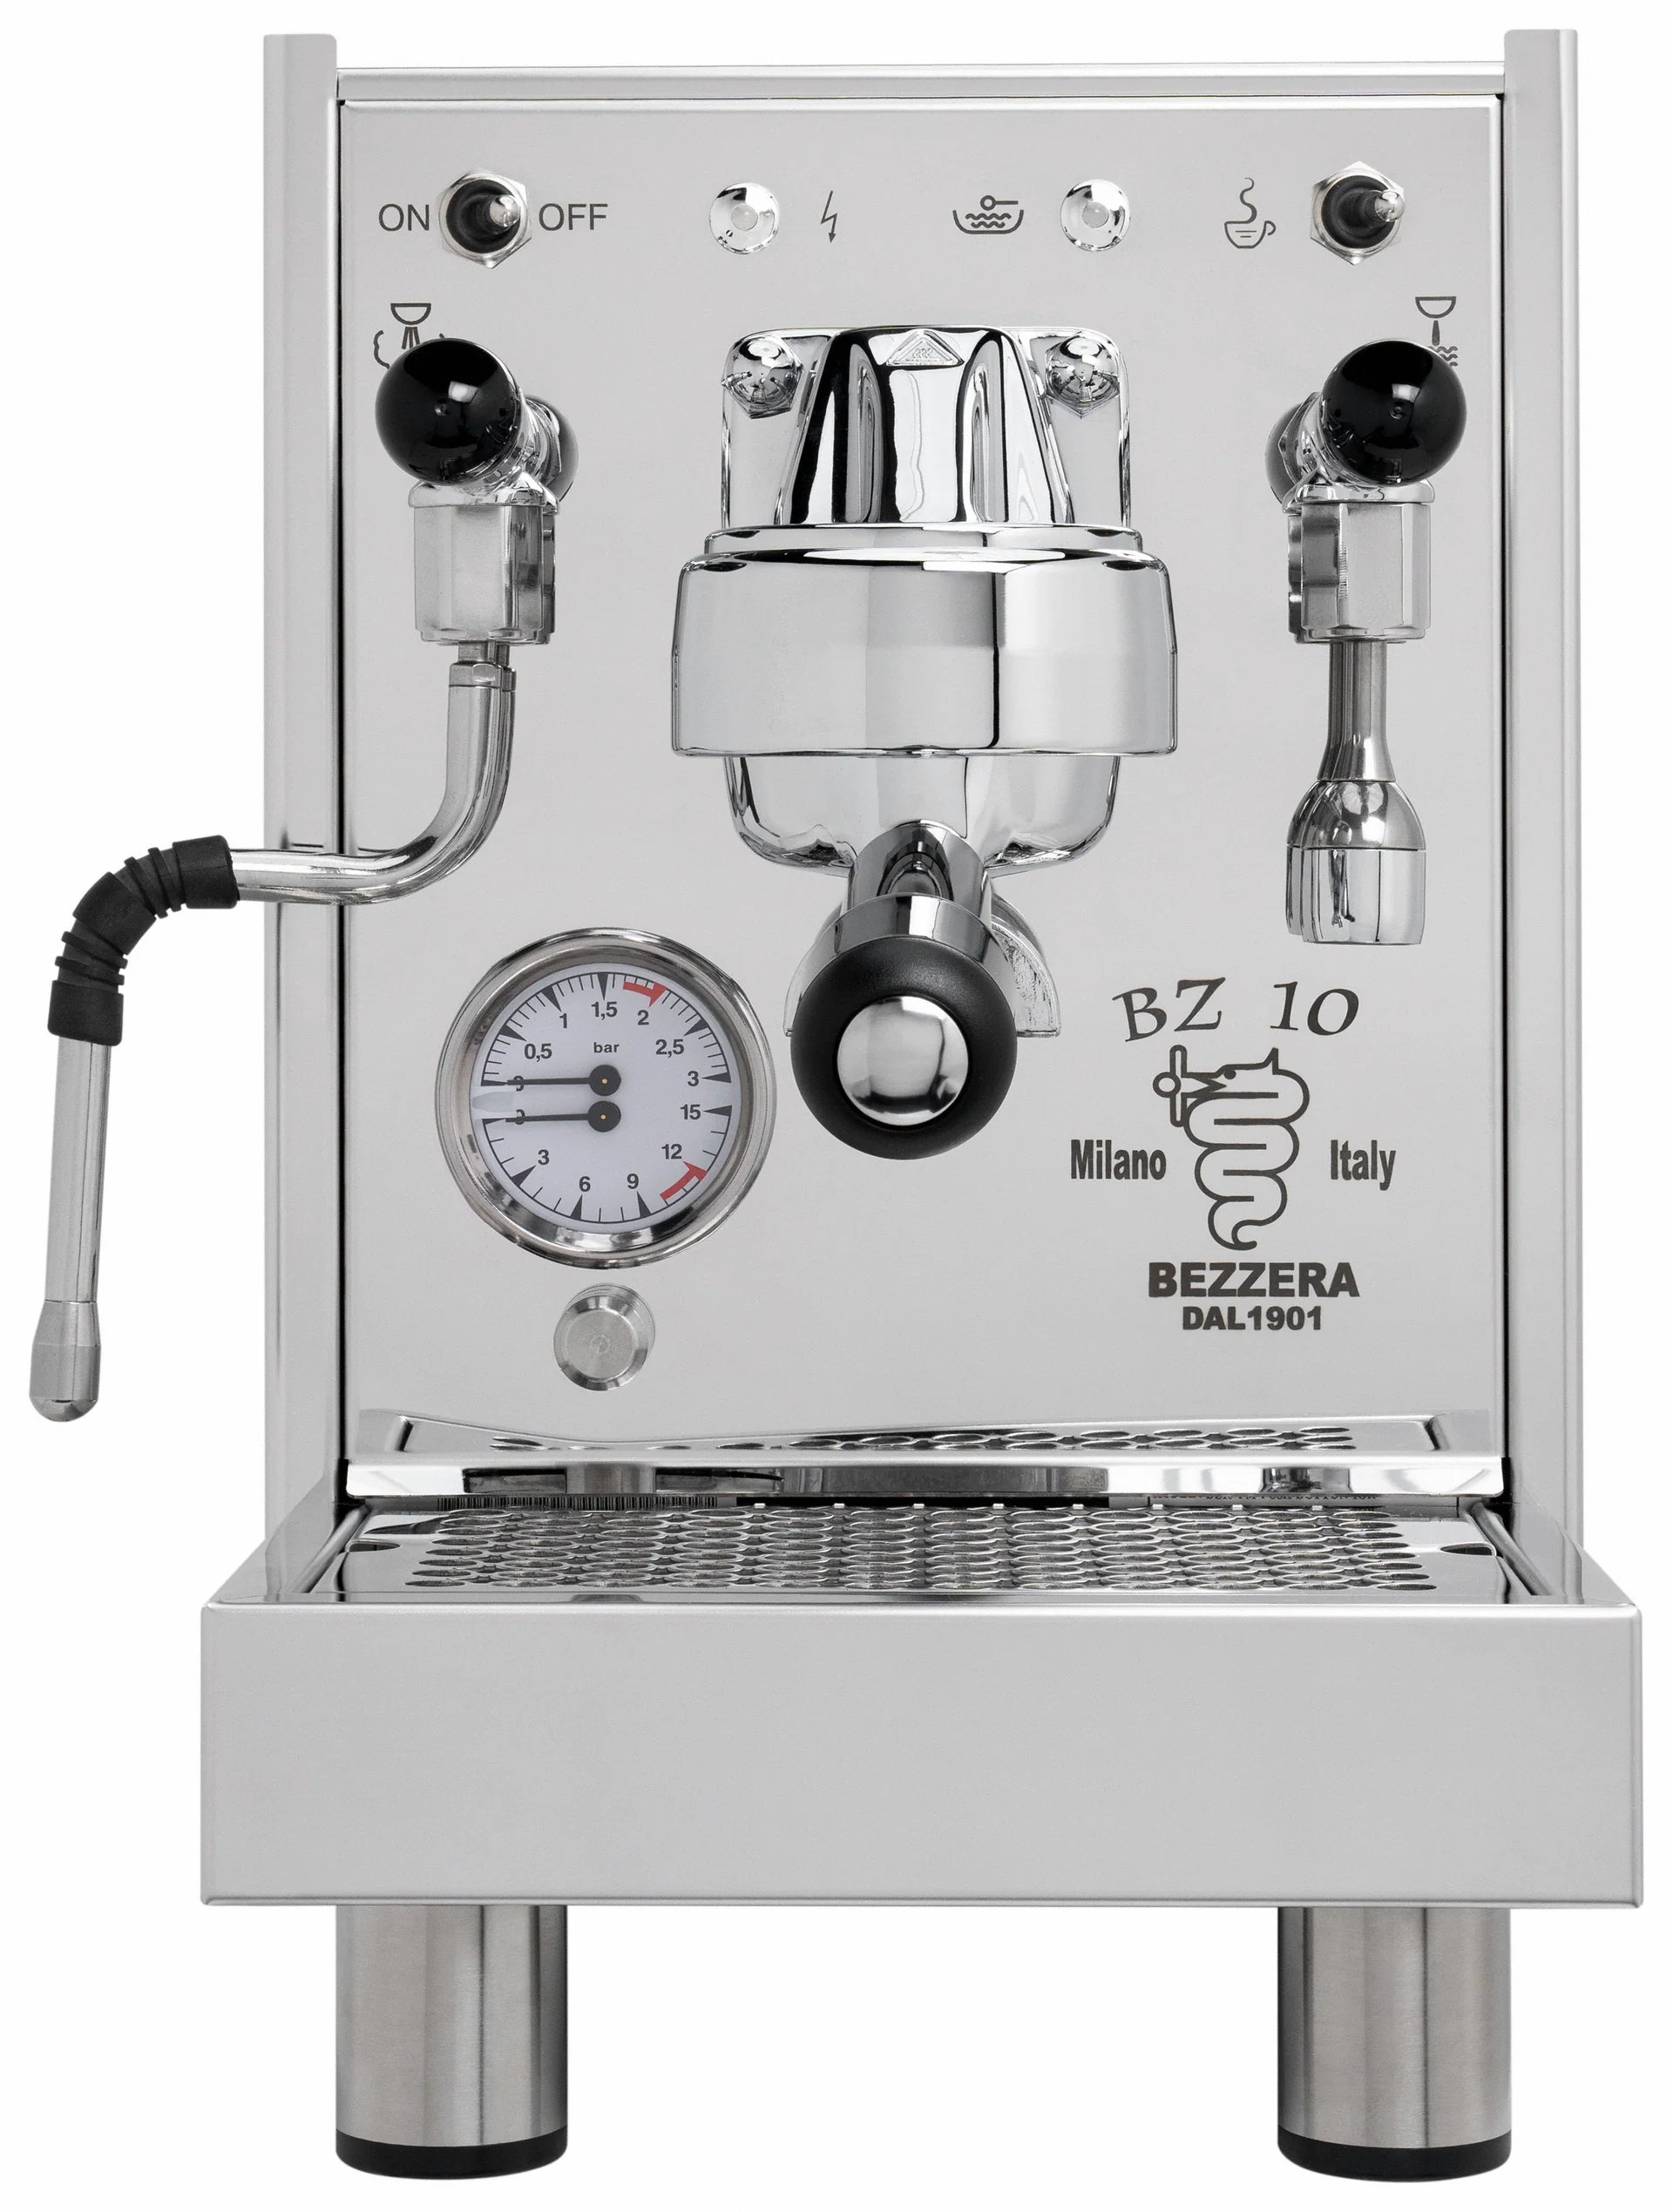 Bezzera - Espresso Machine (BZ10P)